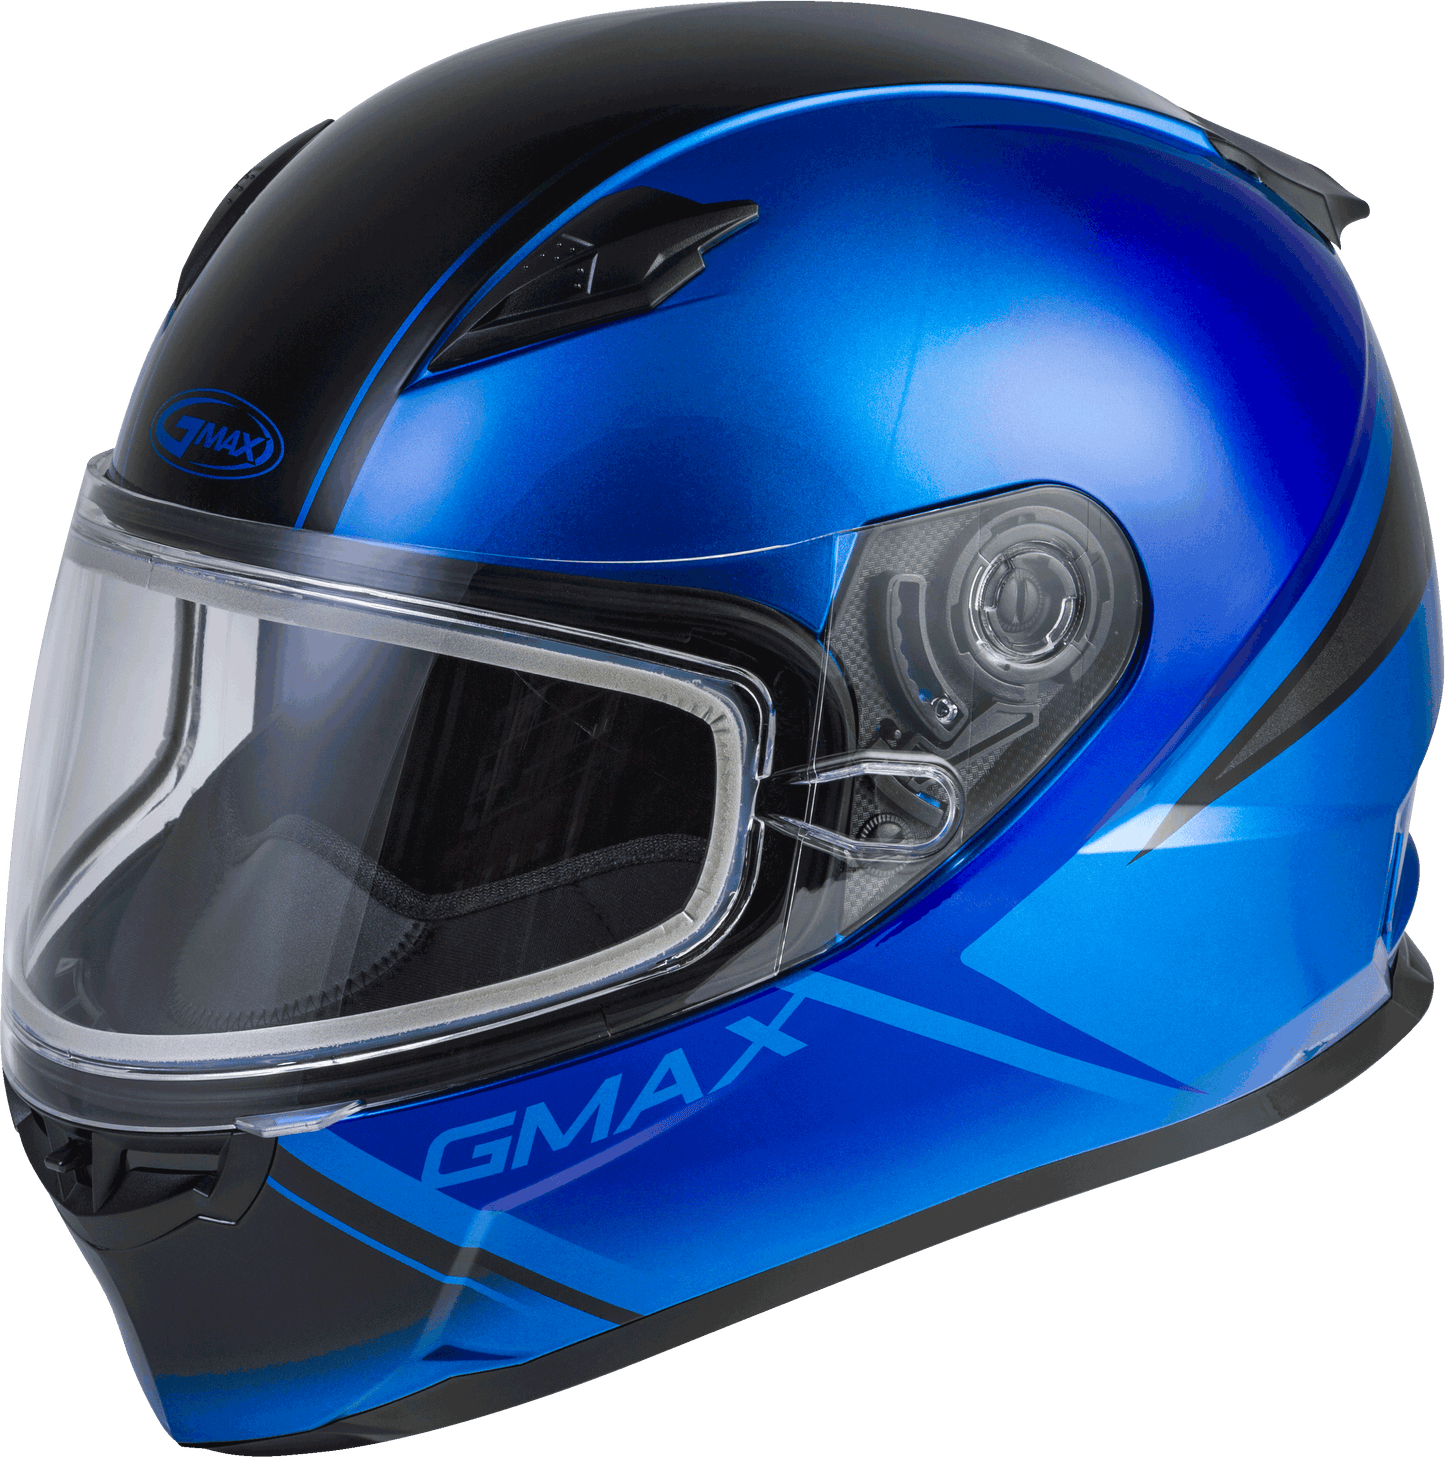 Gmax 72-6332 FF-49S 'Hail' Full-Face Snow Helmet Blue/Black